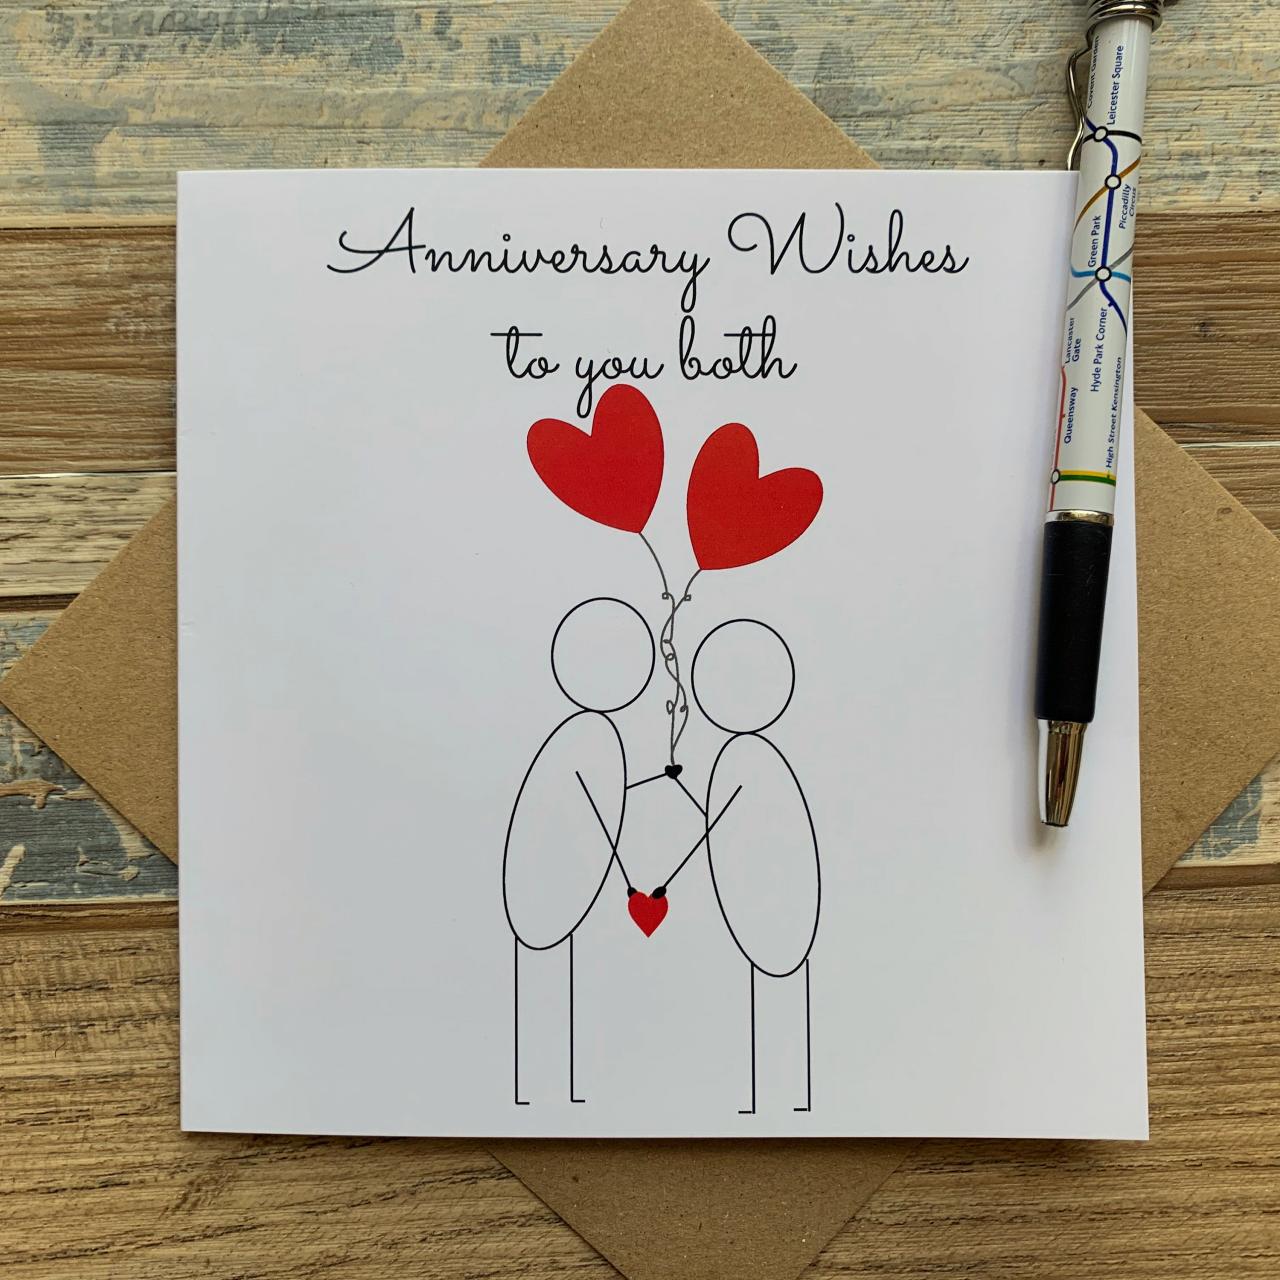 How do you write an anniversary status